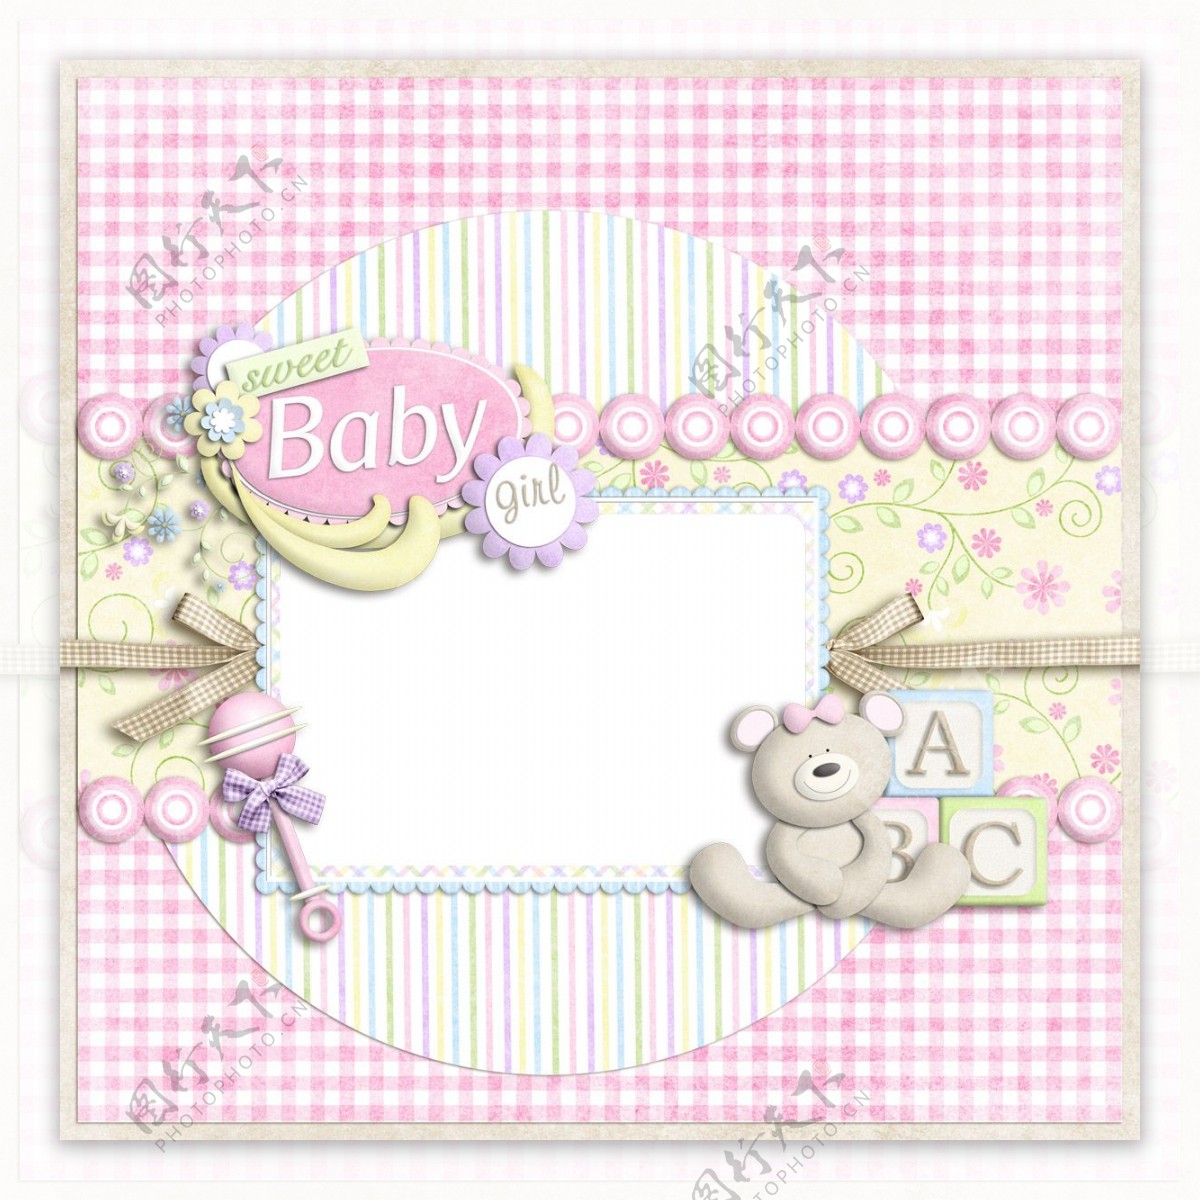 儿童相框可爱相框宝宝相框时尚相框图片